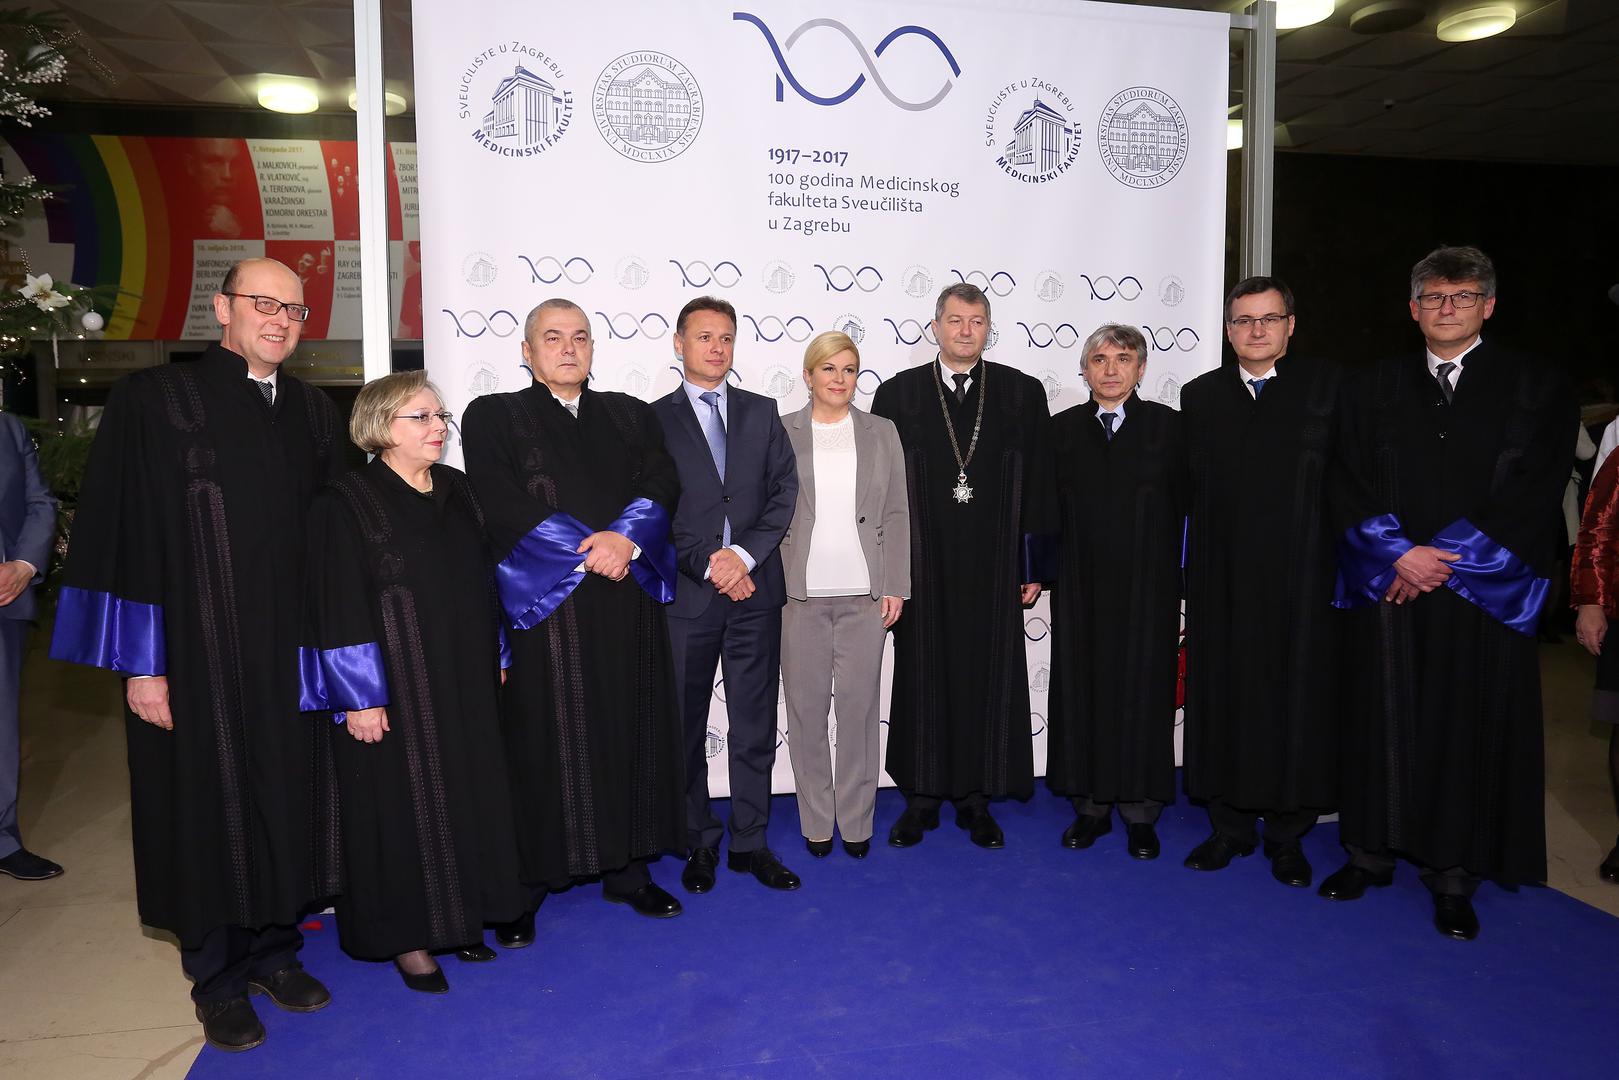 Među nazočnima su bili i predsjednica RH Kolinda Grabar-Kitarović, predsjednik Sabora Gordan Jandroković, zagrebački gradonačelnik Milan Bandić, ravnatelj HAZU-a Zvonko Kusić...